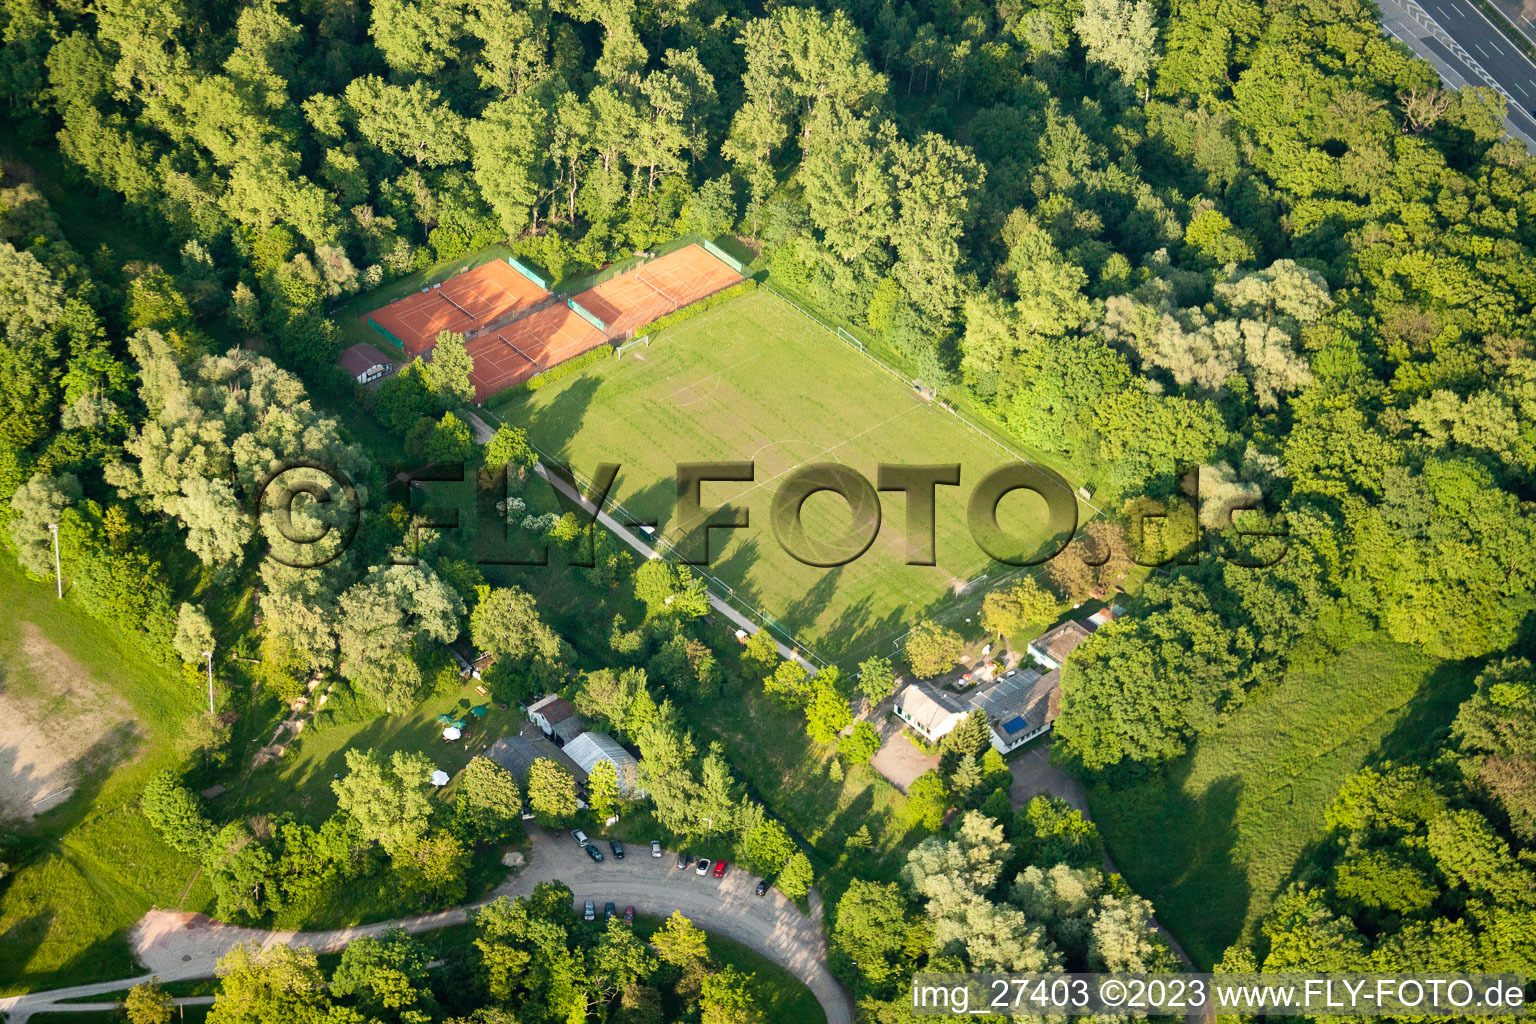 Vue aérienne de Rüppur, terrain de sport à le quartier Rüppurr in Karlsruhe dans le département Bade-Wurtemberg, Allemagne